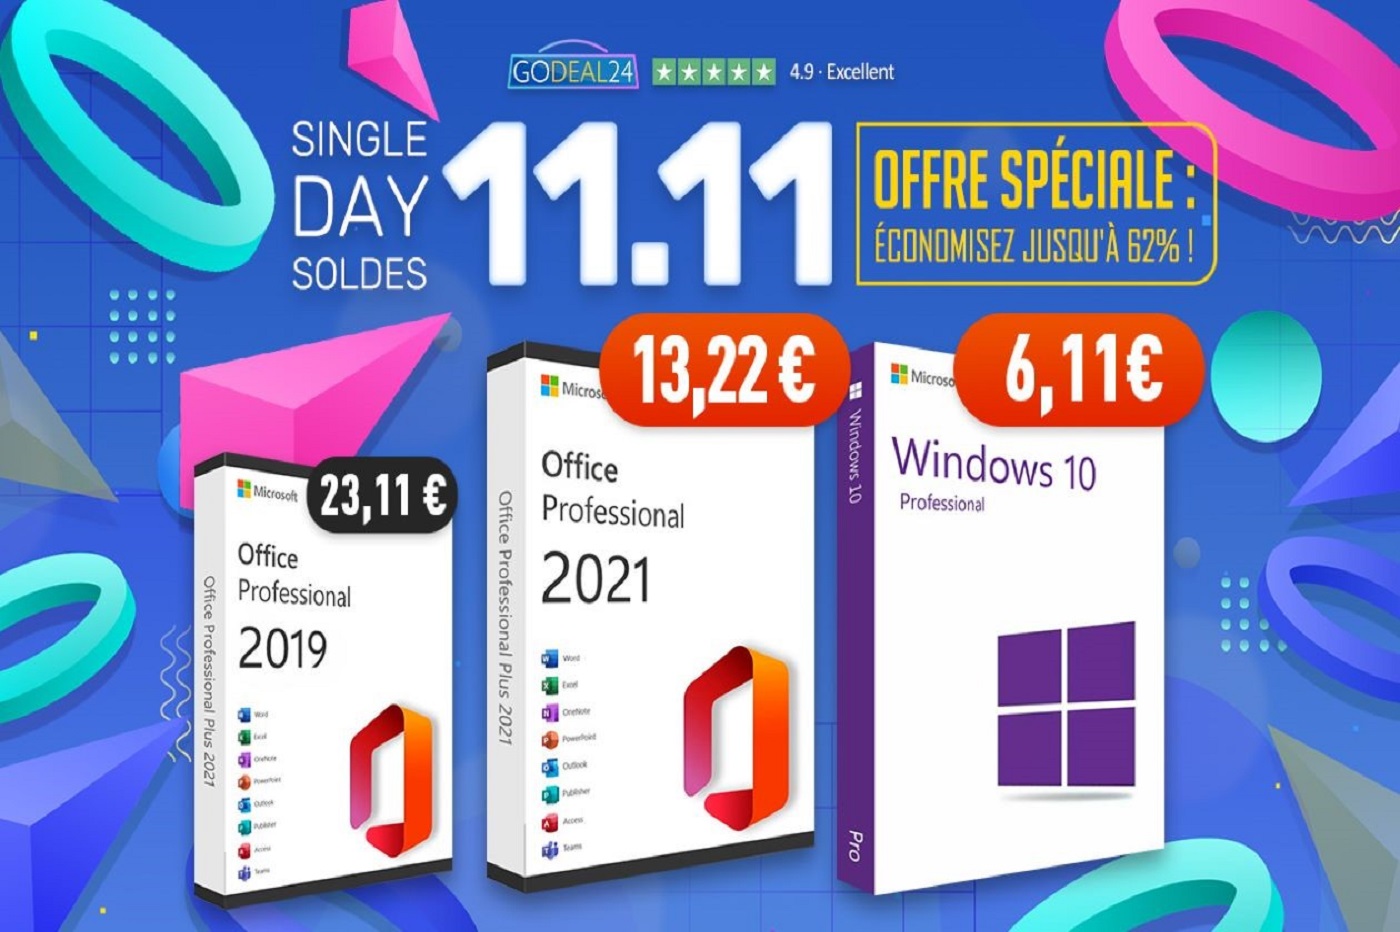 Godeal24 lance ses offres pour le Single Day avec Windows 10 à 6€ seulement !